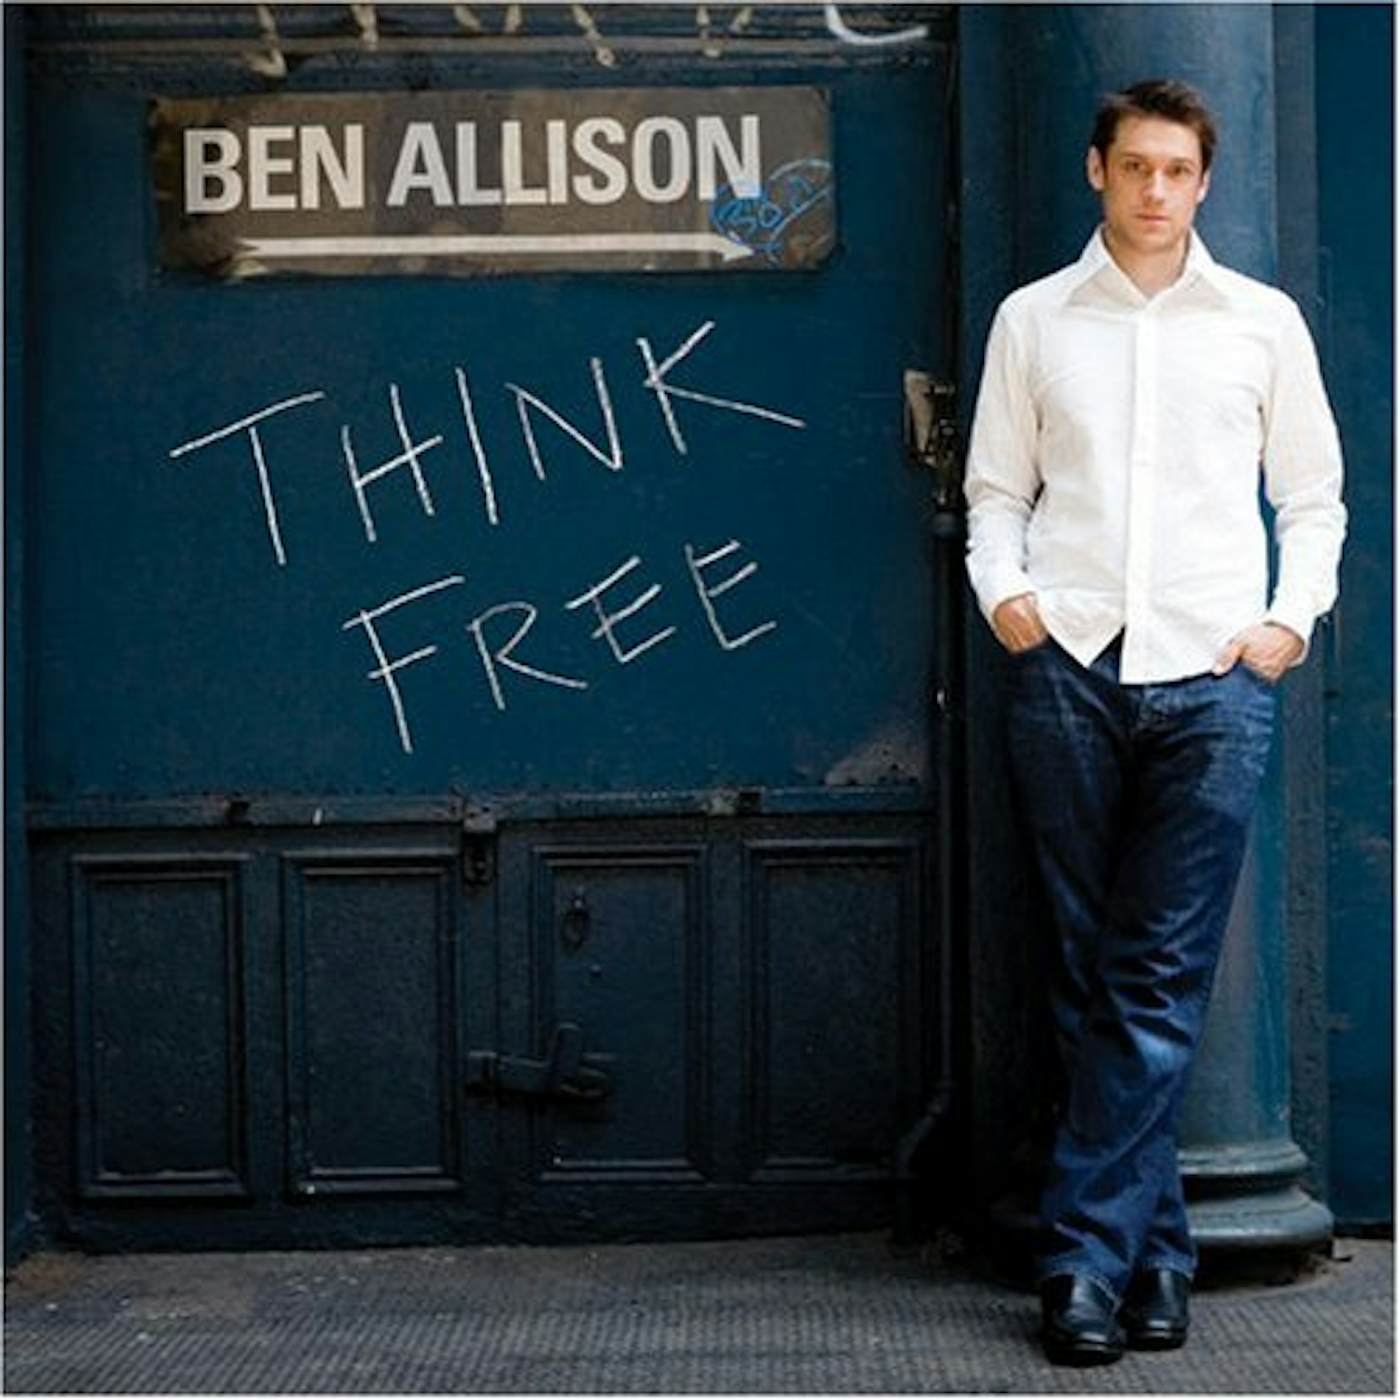 Ben Allison THINK FREE CD